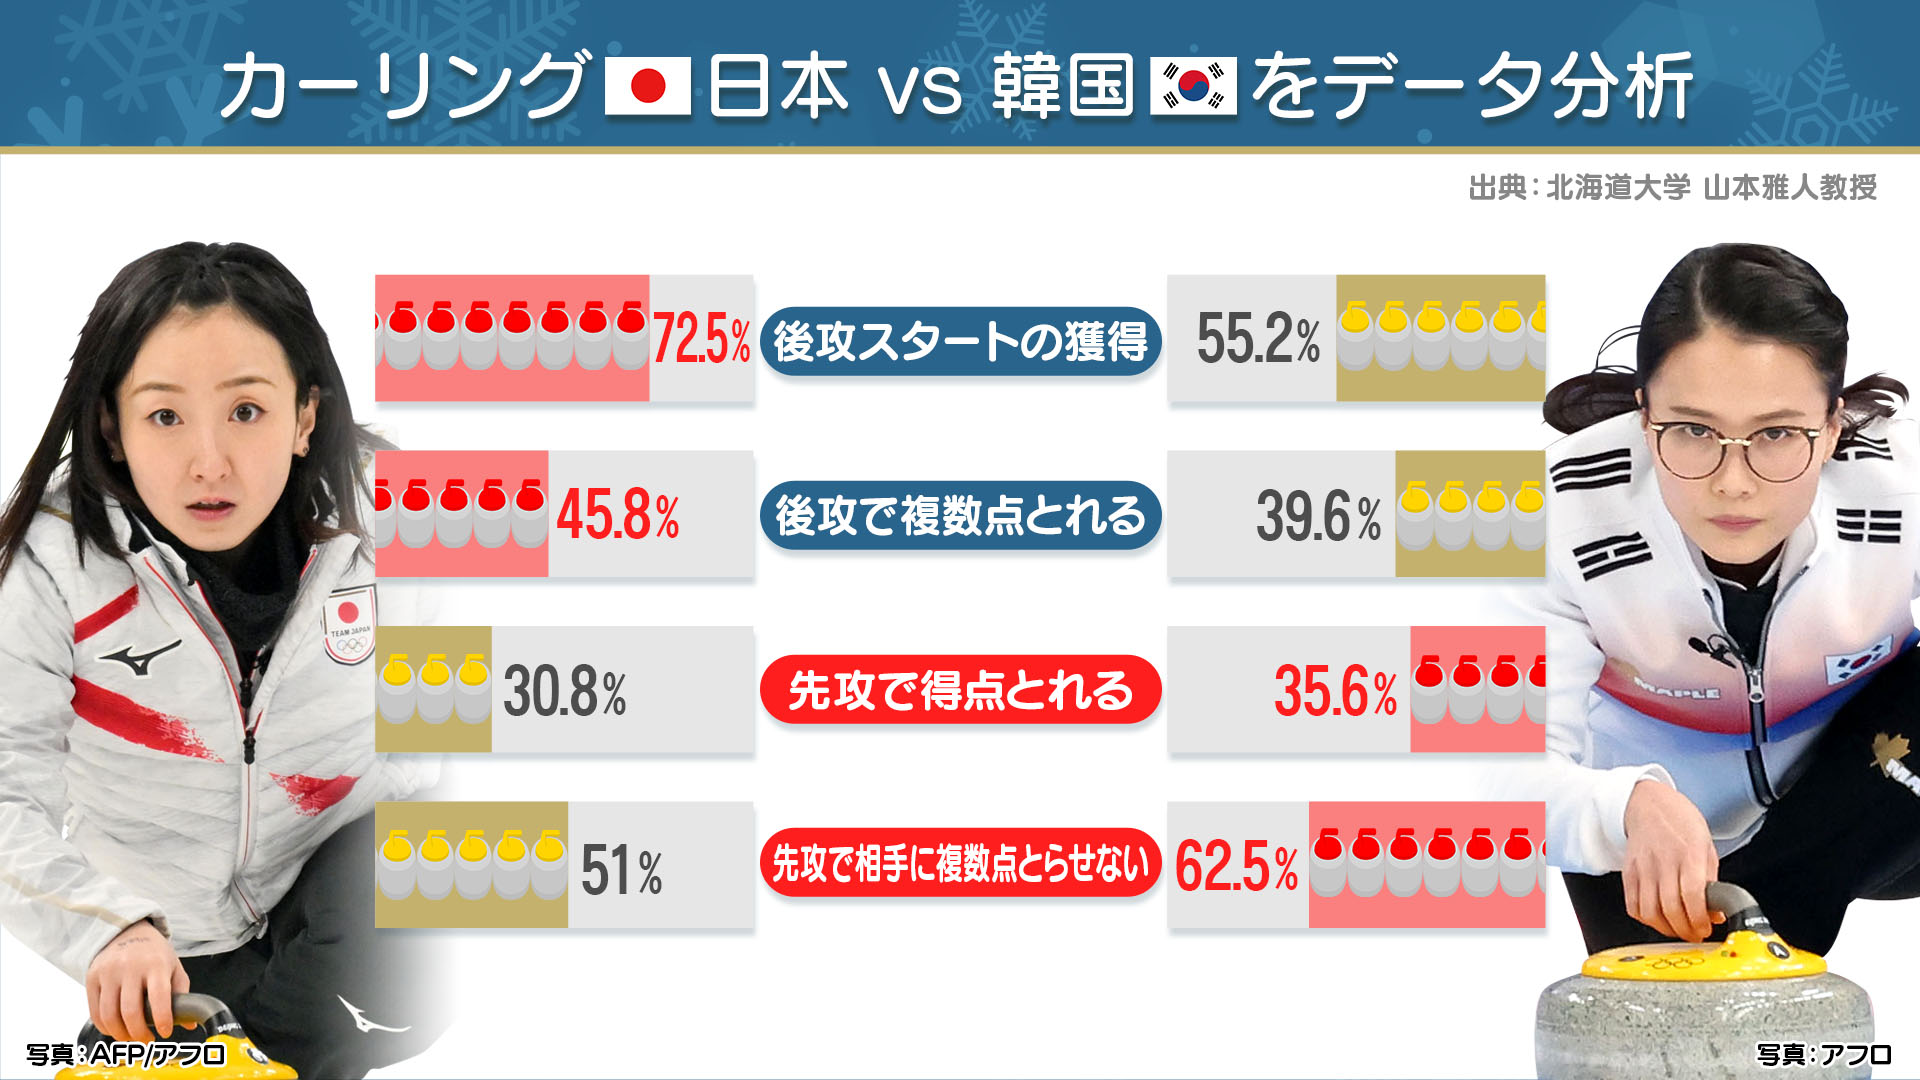 カーリング日本代表負けられない韓国戦 藤澤選手vs メガネ先輩 をデータ分析